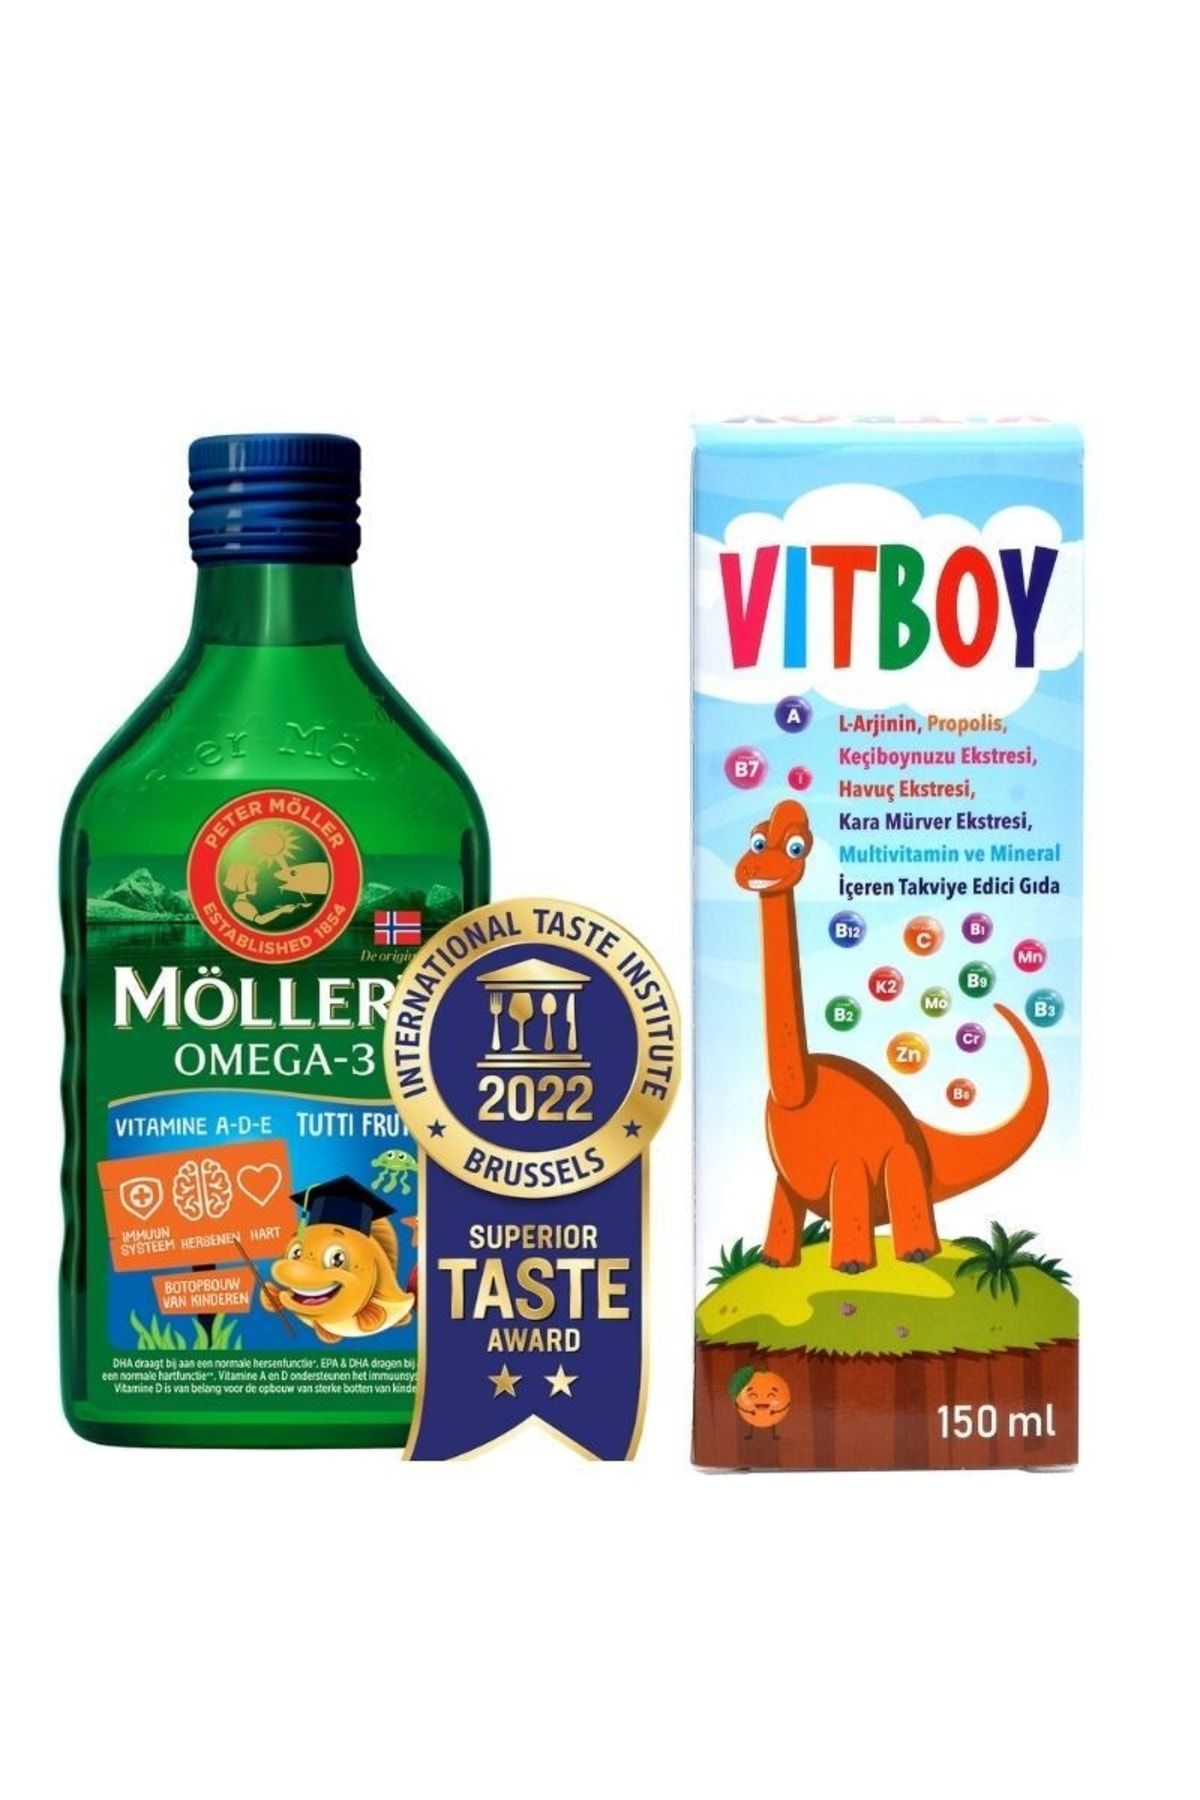 Mollers Tutti Frutti Balık Yağı 250 Ml-vitboy Multivitamin-mineral Içeren Takviye Edici Gıda 150 Ml